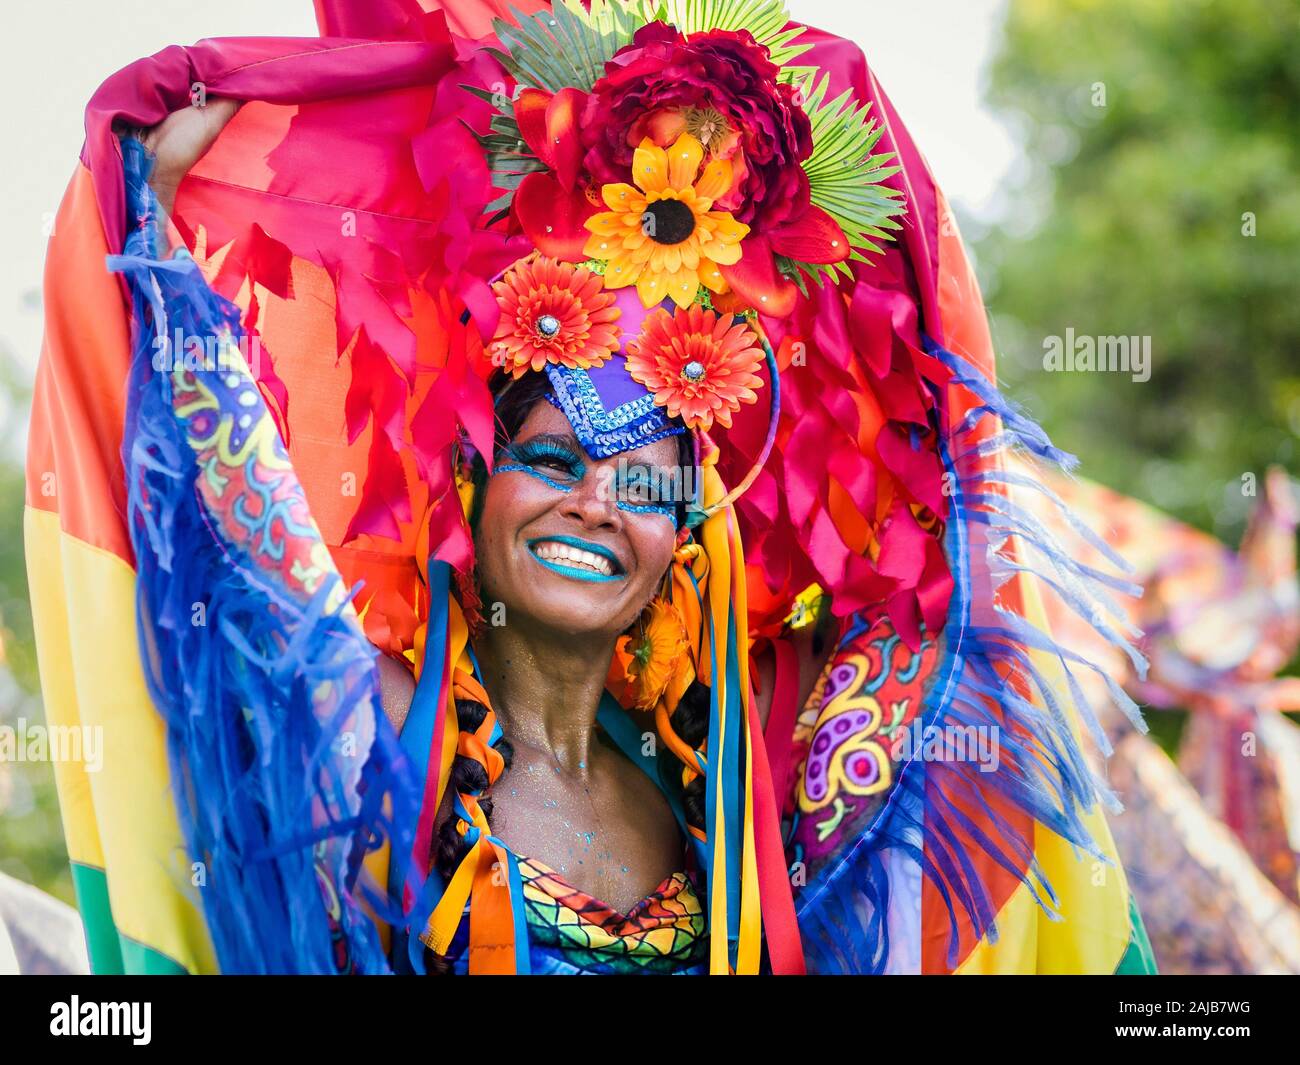 Hermosa mujer brasileña de ascendencia africana vistiendo coloridos trajes y sonriente durante el Carnaval fiesta callejera en Río de Janeiro, Brasil. Foto de stock